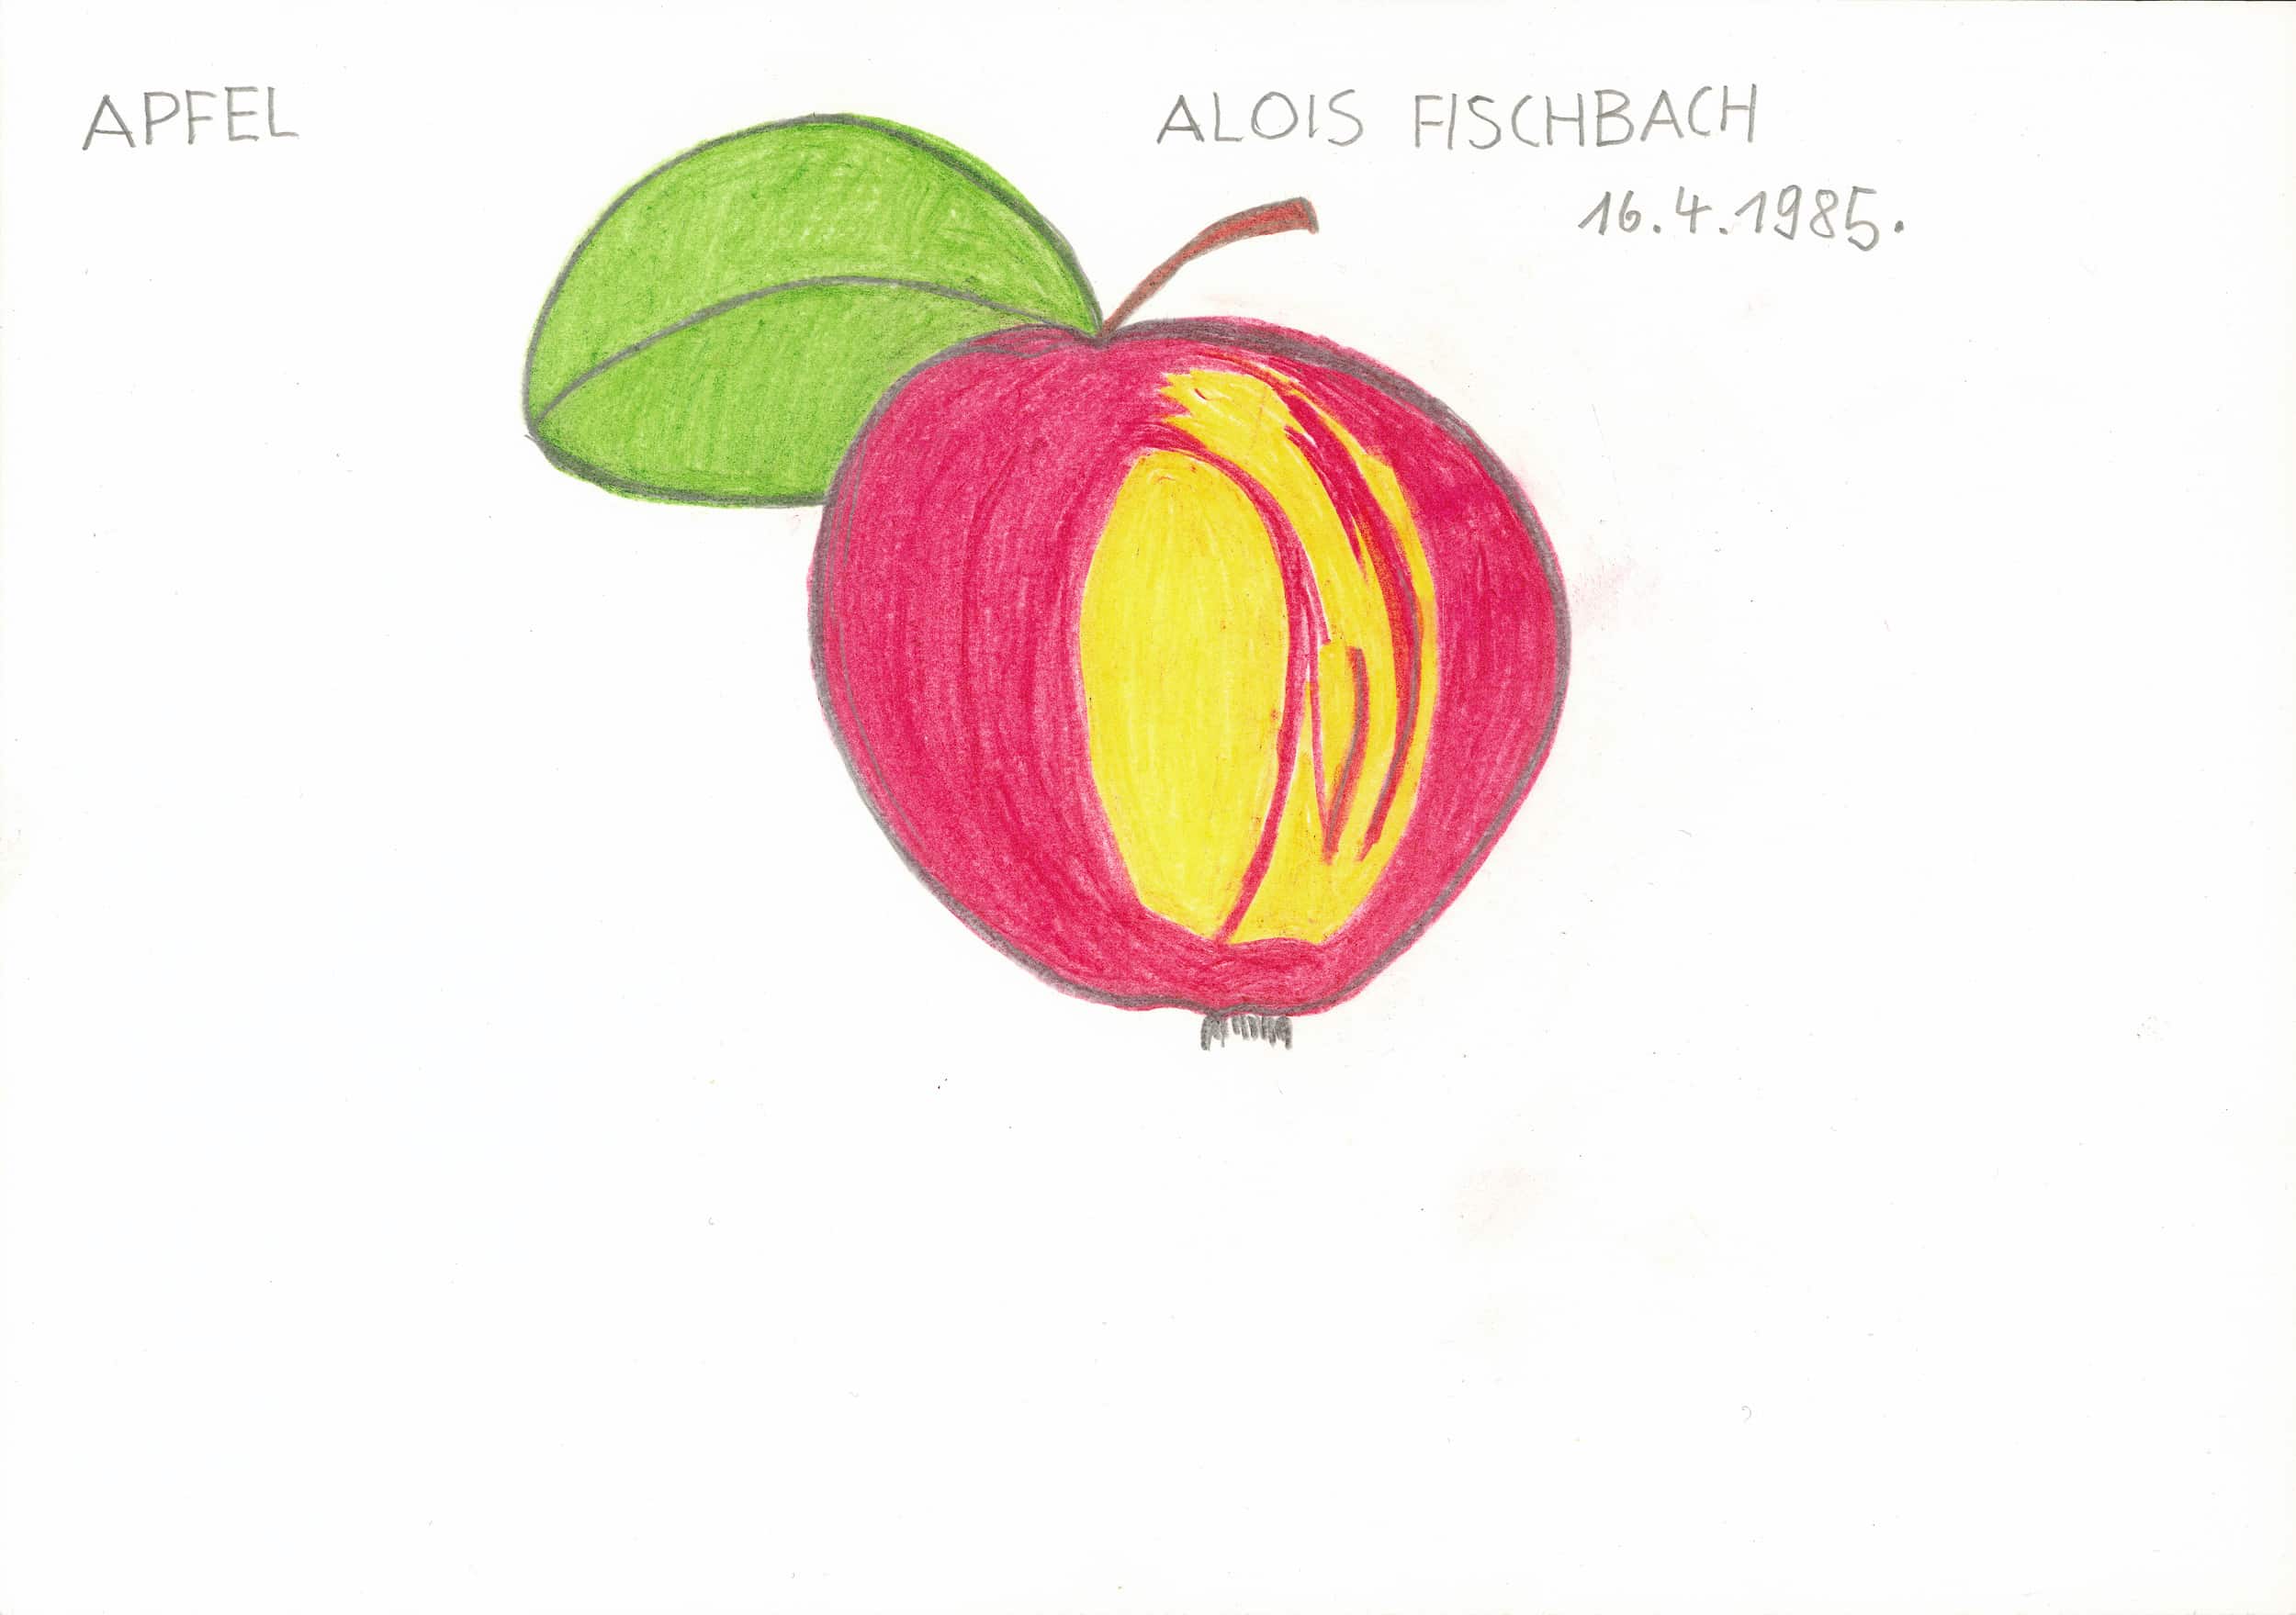 fischbach alois - Apfel / Apple